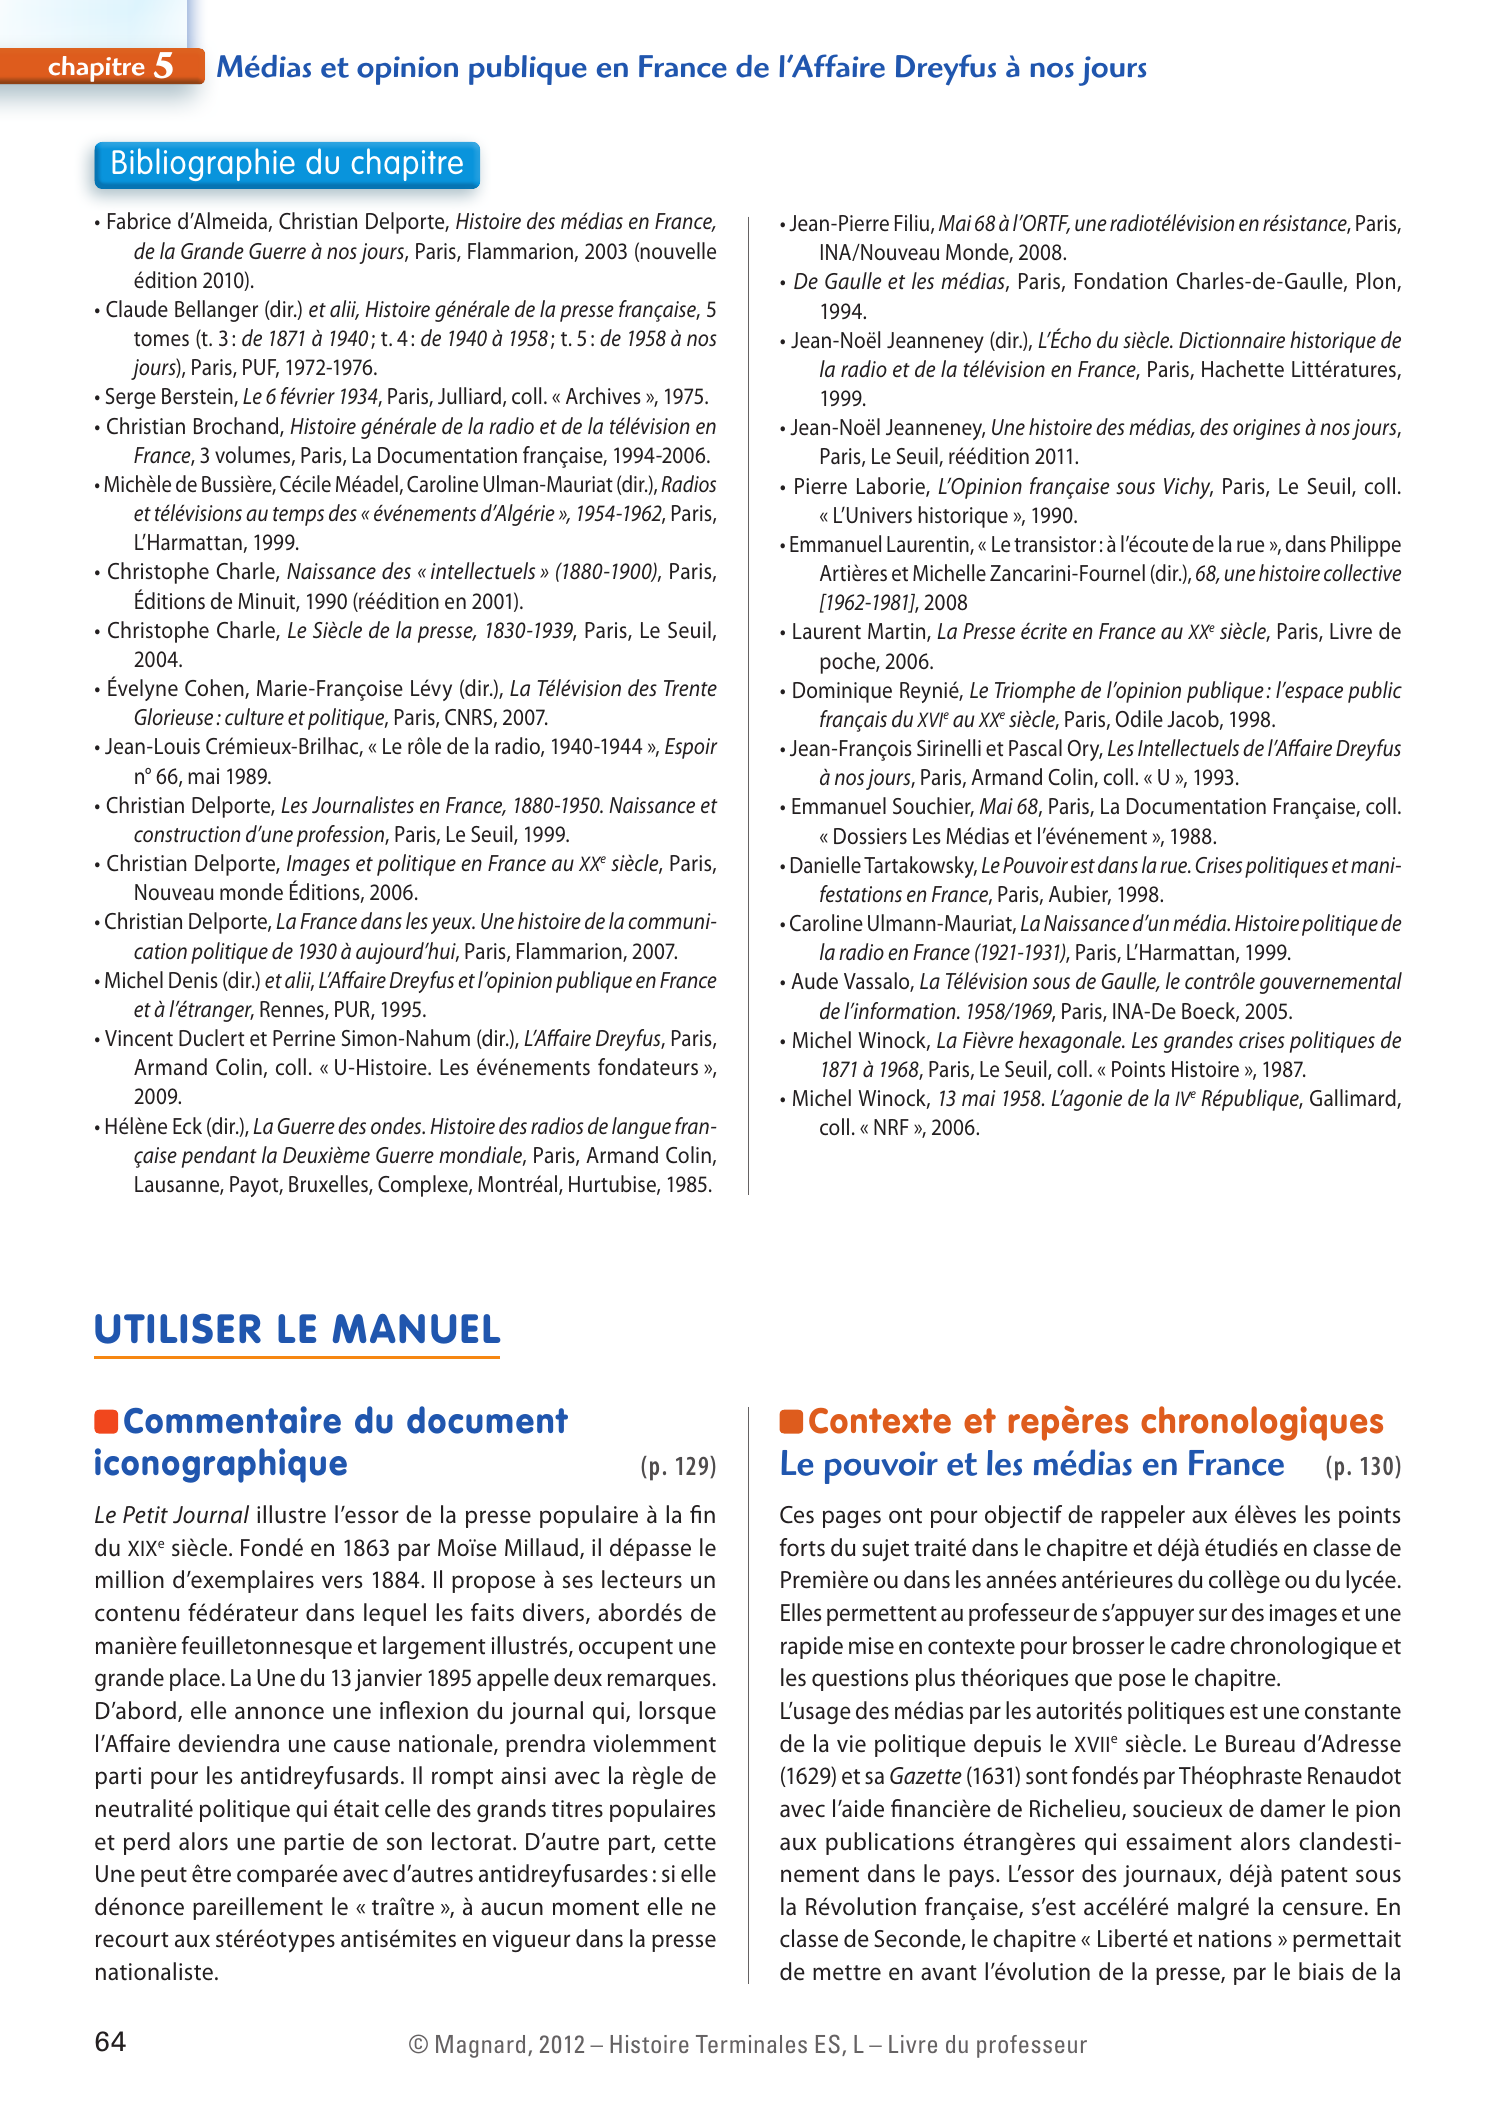 Prévisualisation du document Chapitre 5 : Médias et opinion publique en France de l'Affaire Dreyfus à nos jours.